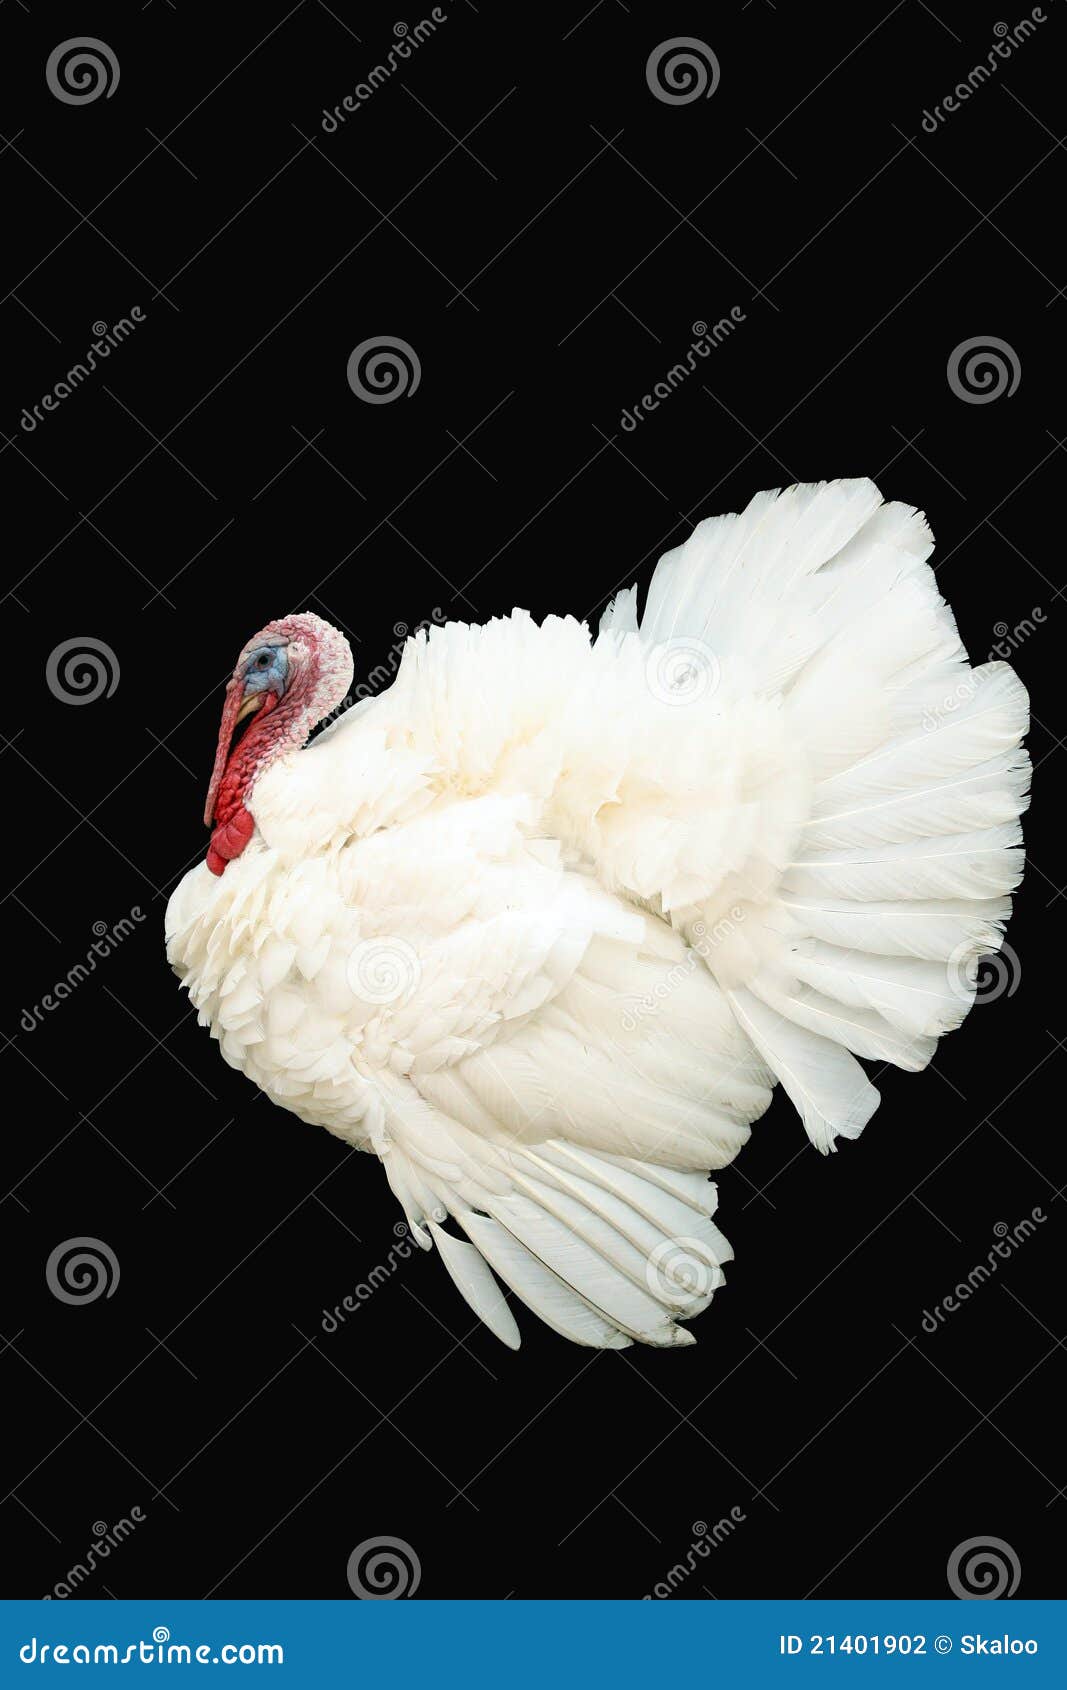 white turkey